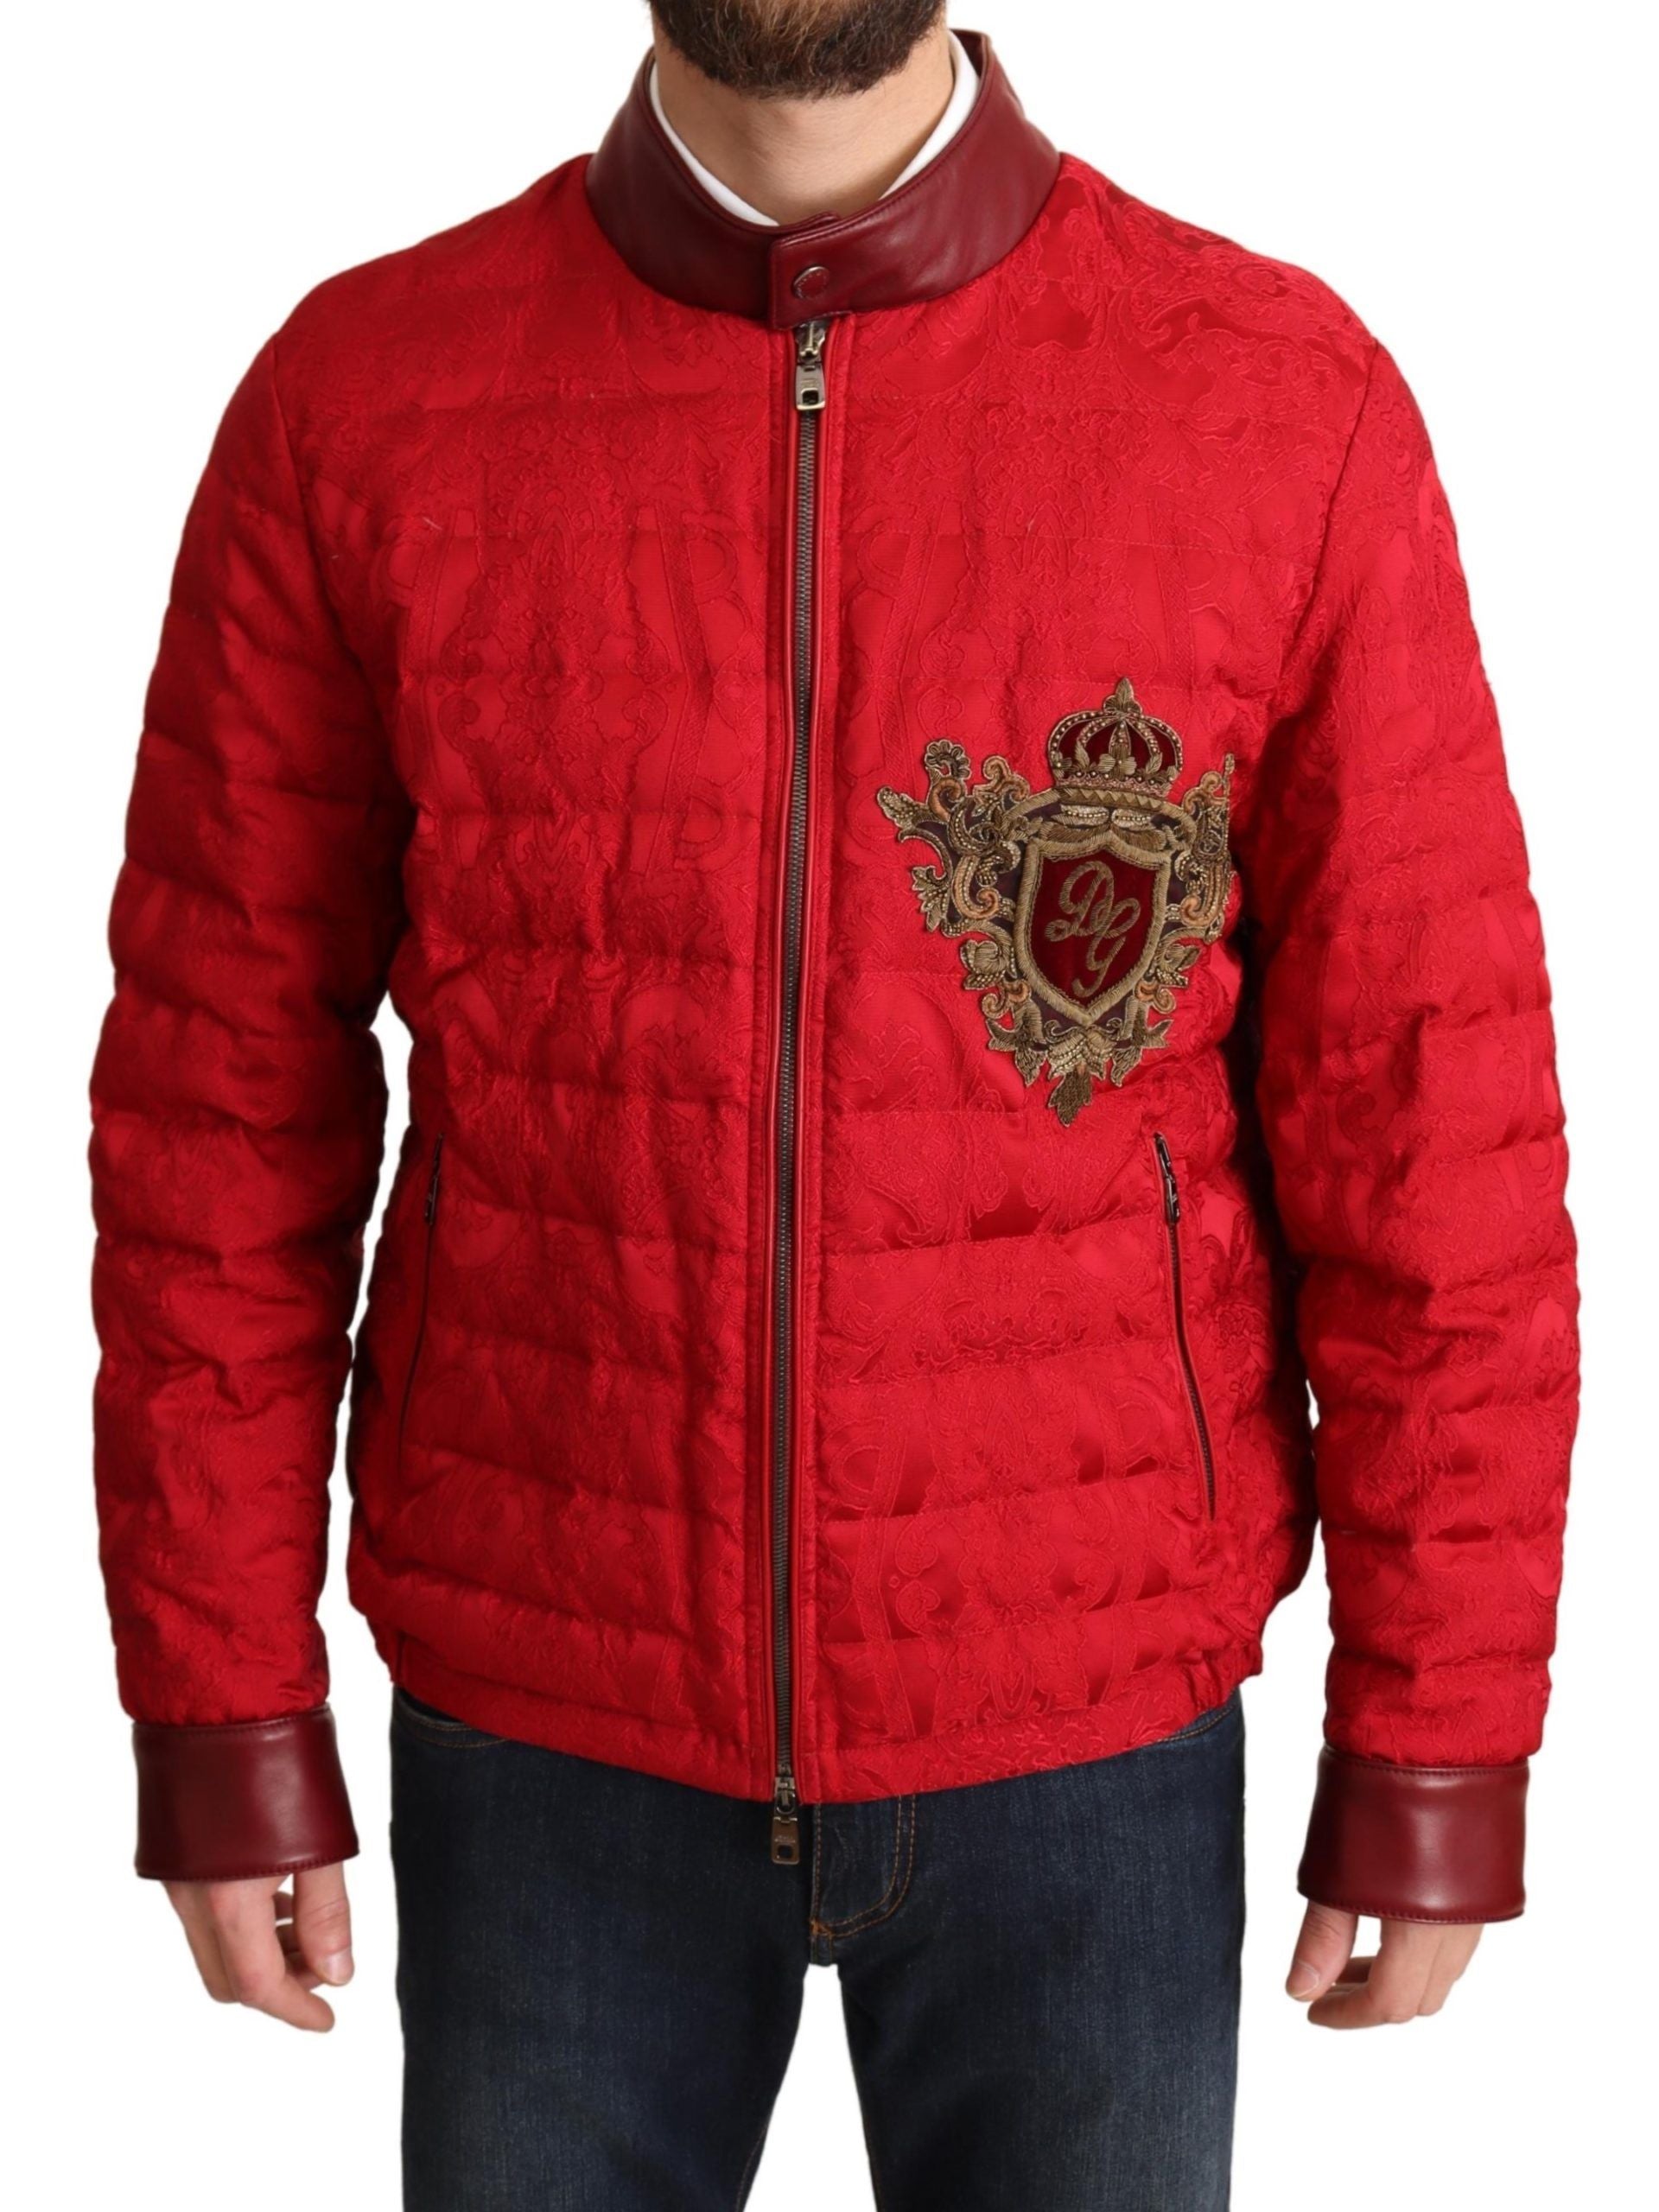 Red and Gold Bomber Designer Jacket